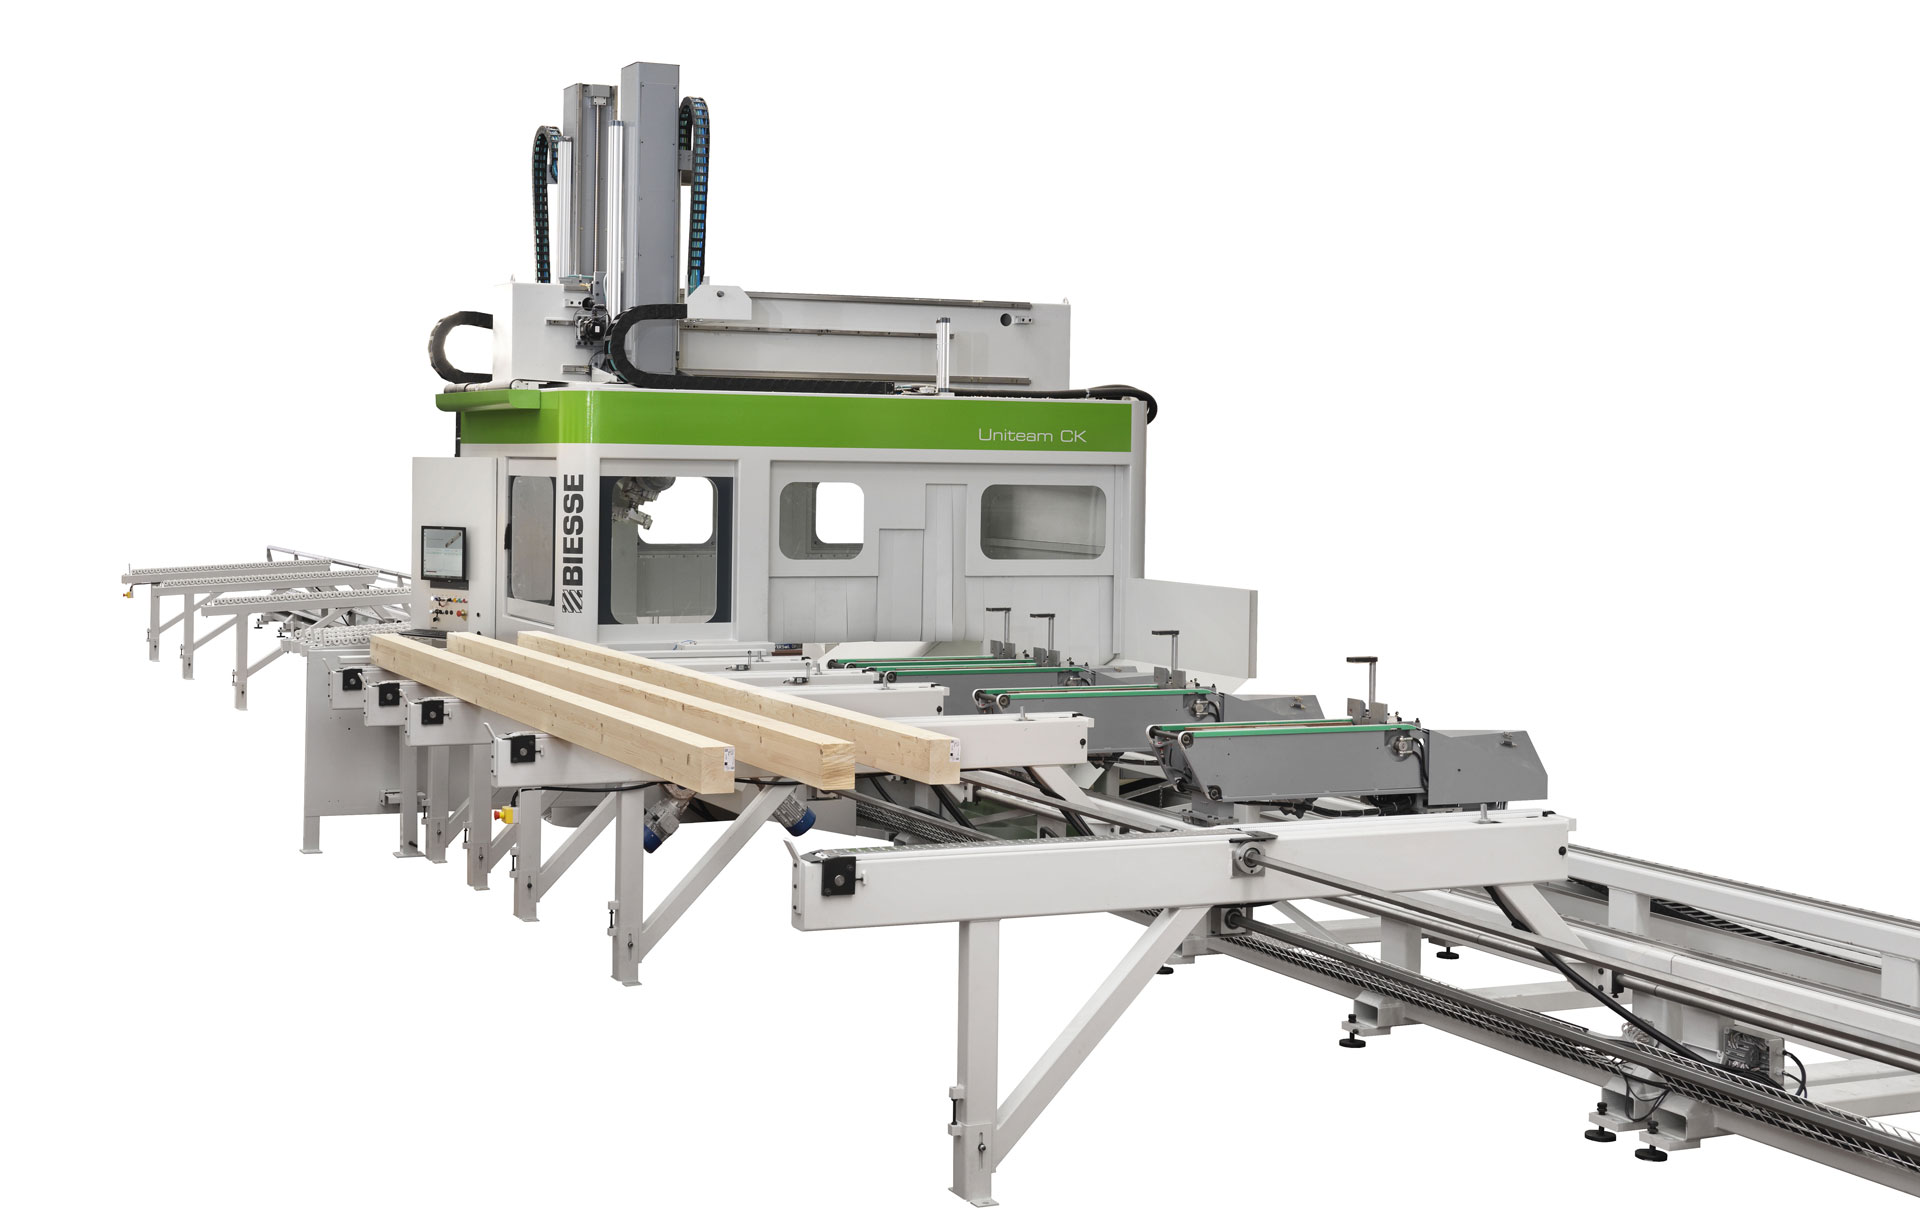 CNC-Maschinen für Holzbau UNITEAM CK: Foto 2